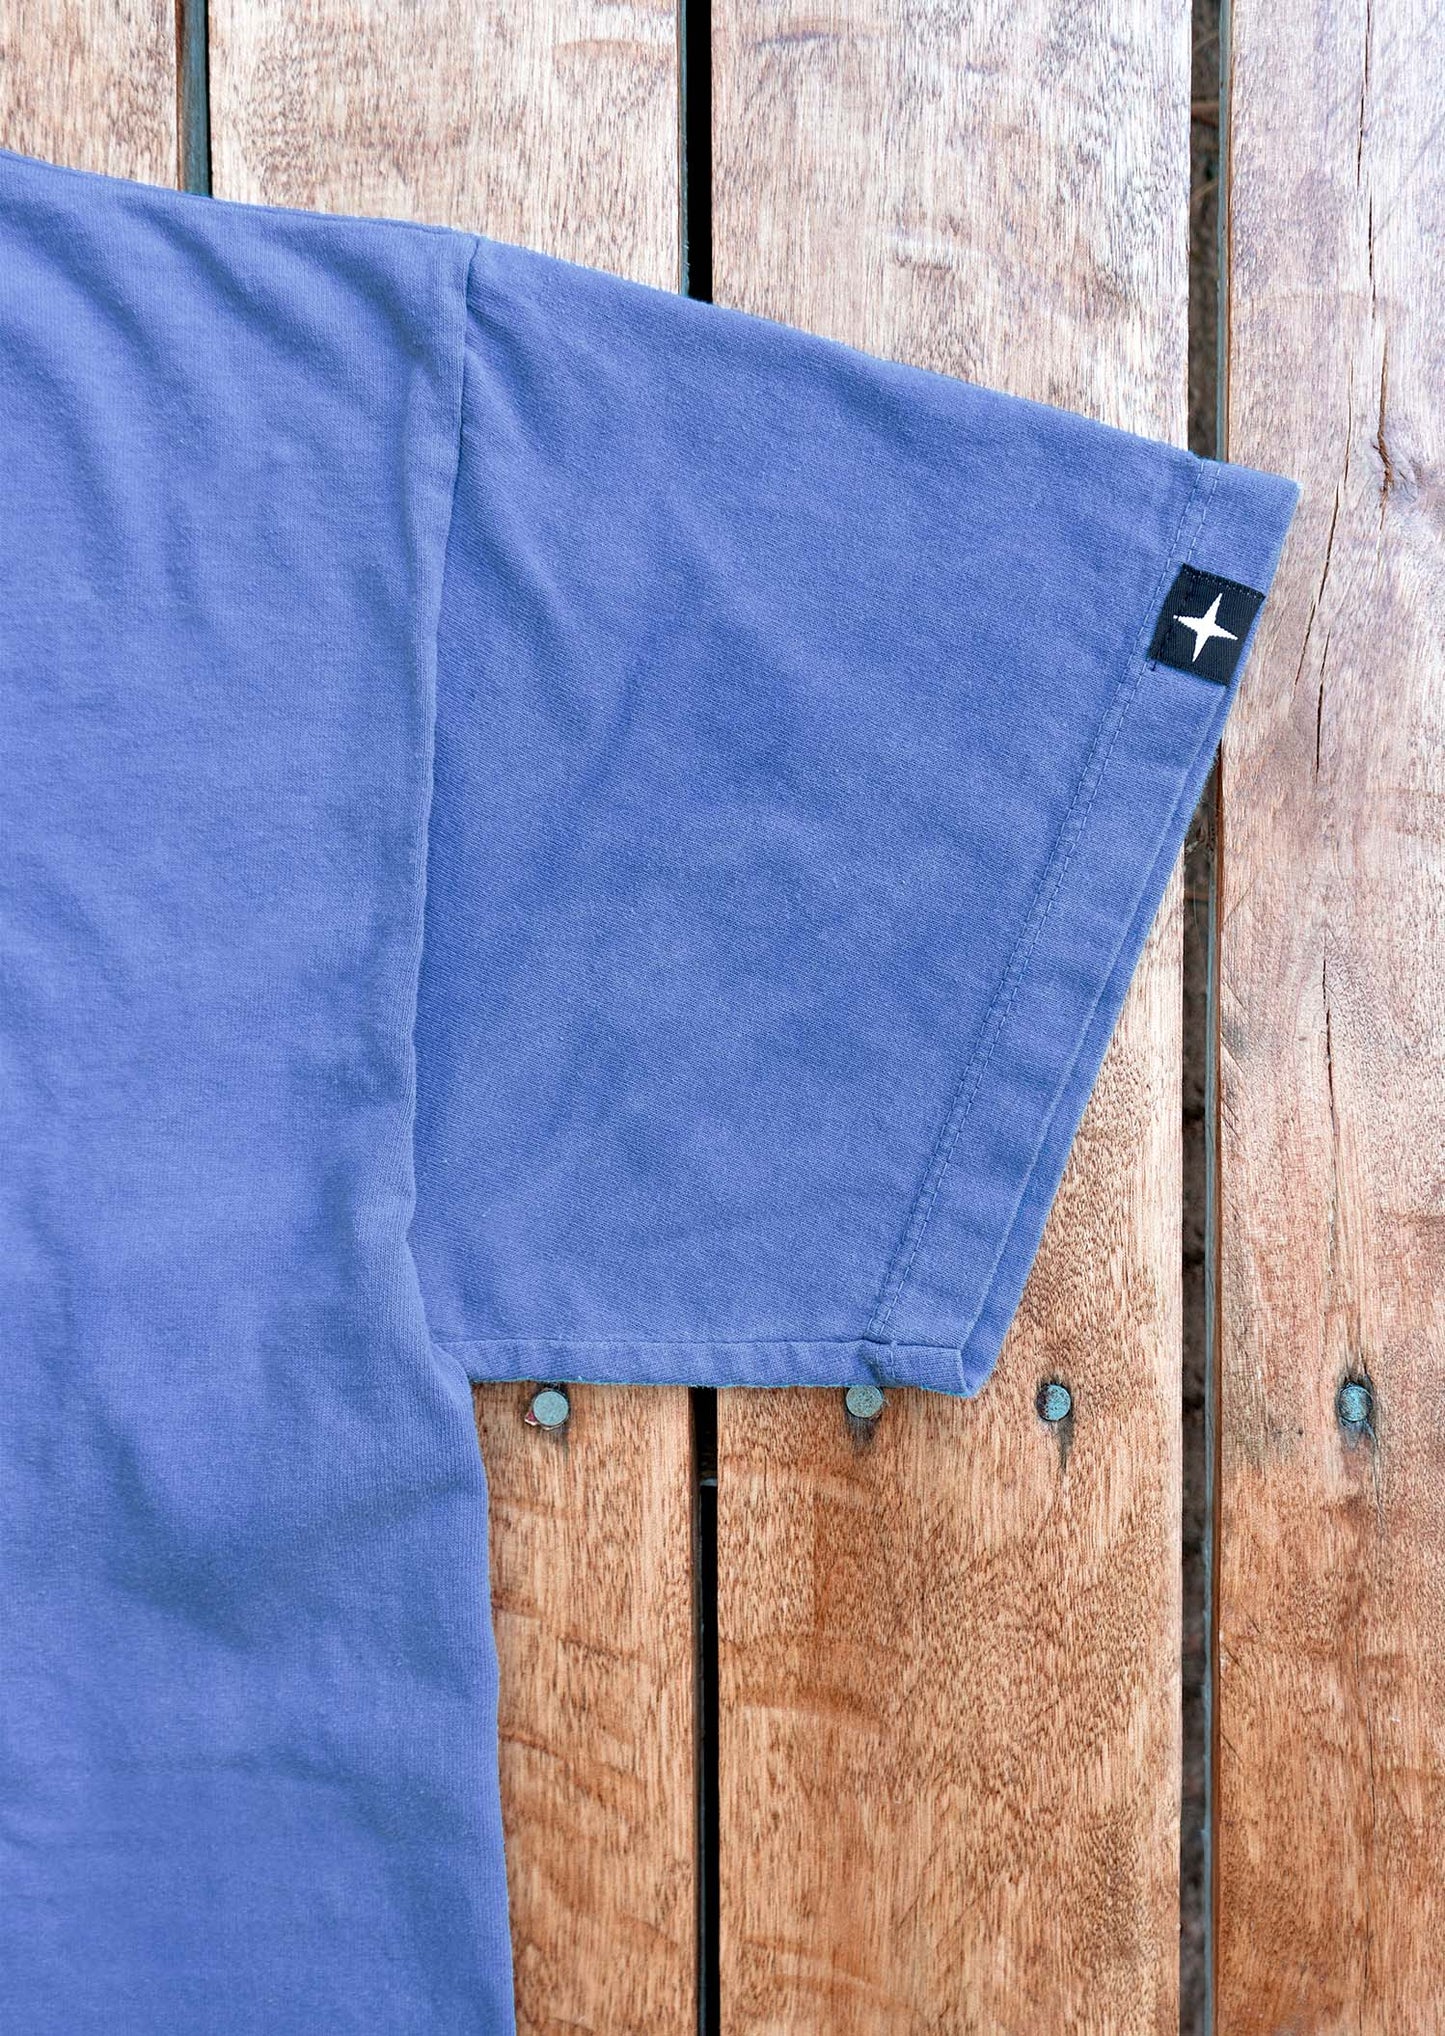 Sunwashed t-shirt - organic cotton - blueberry